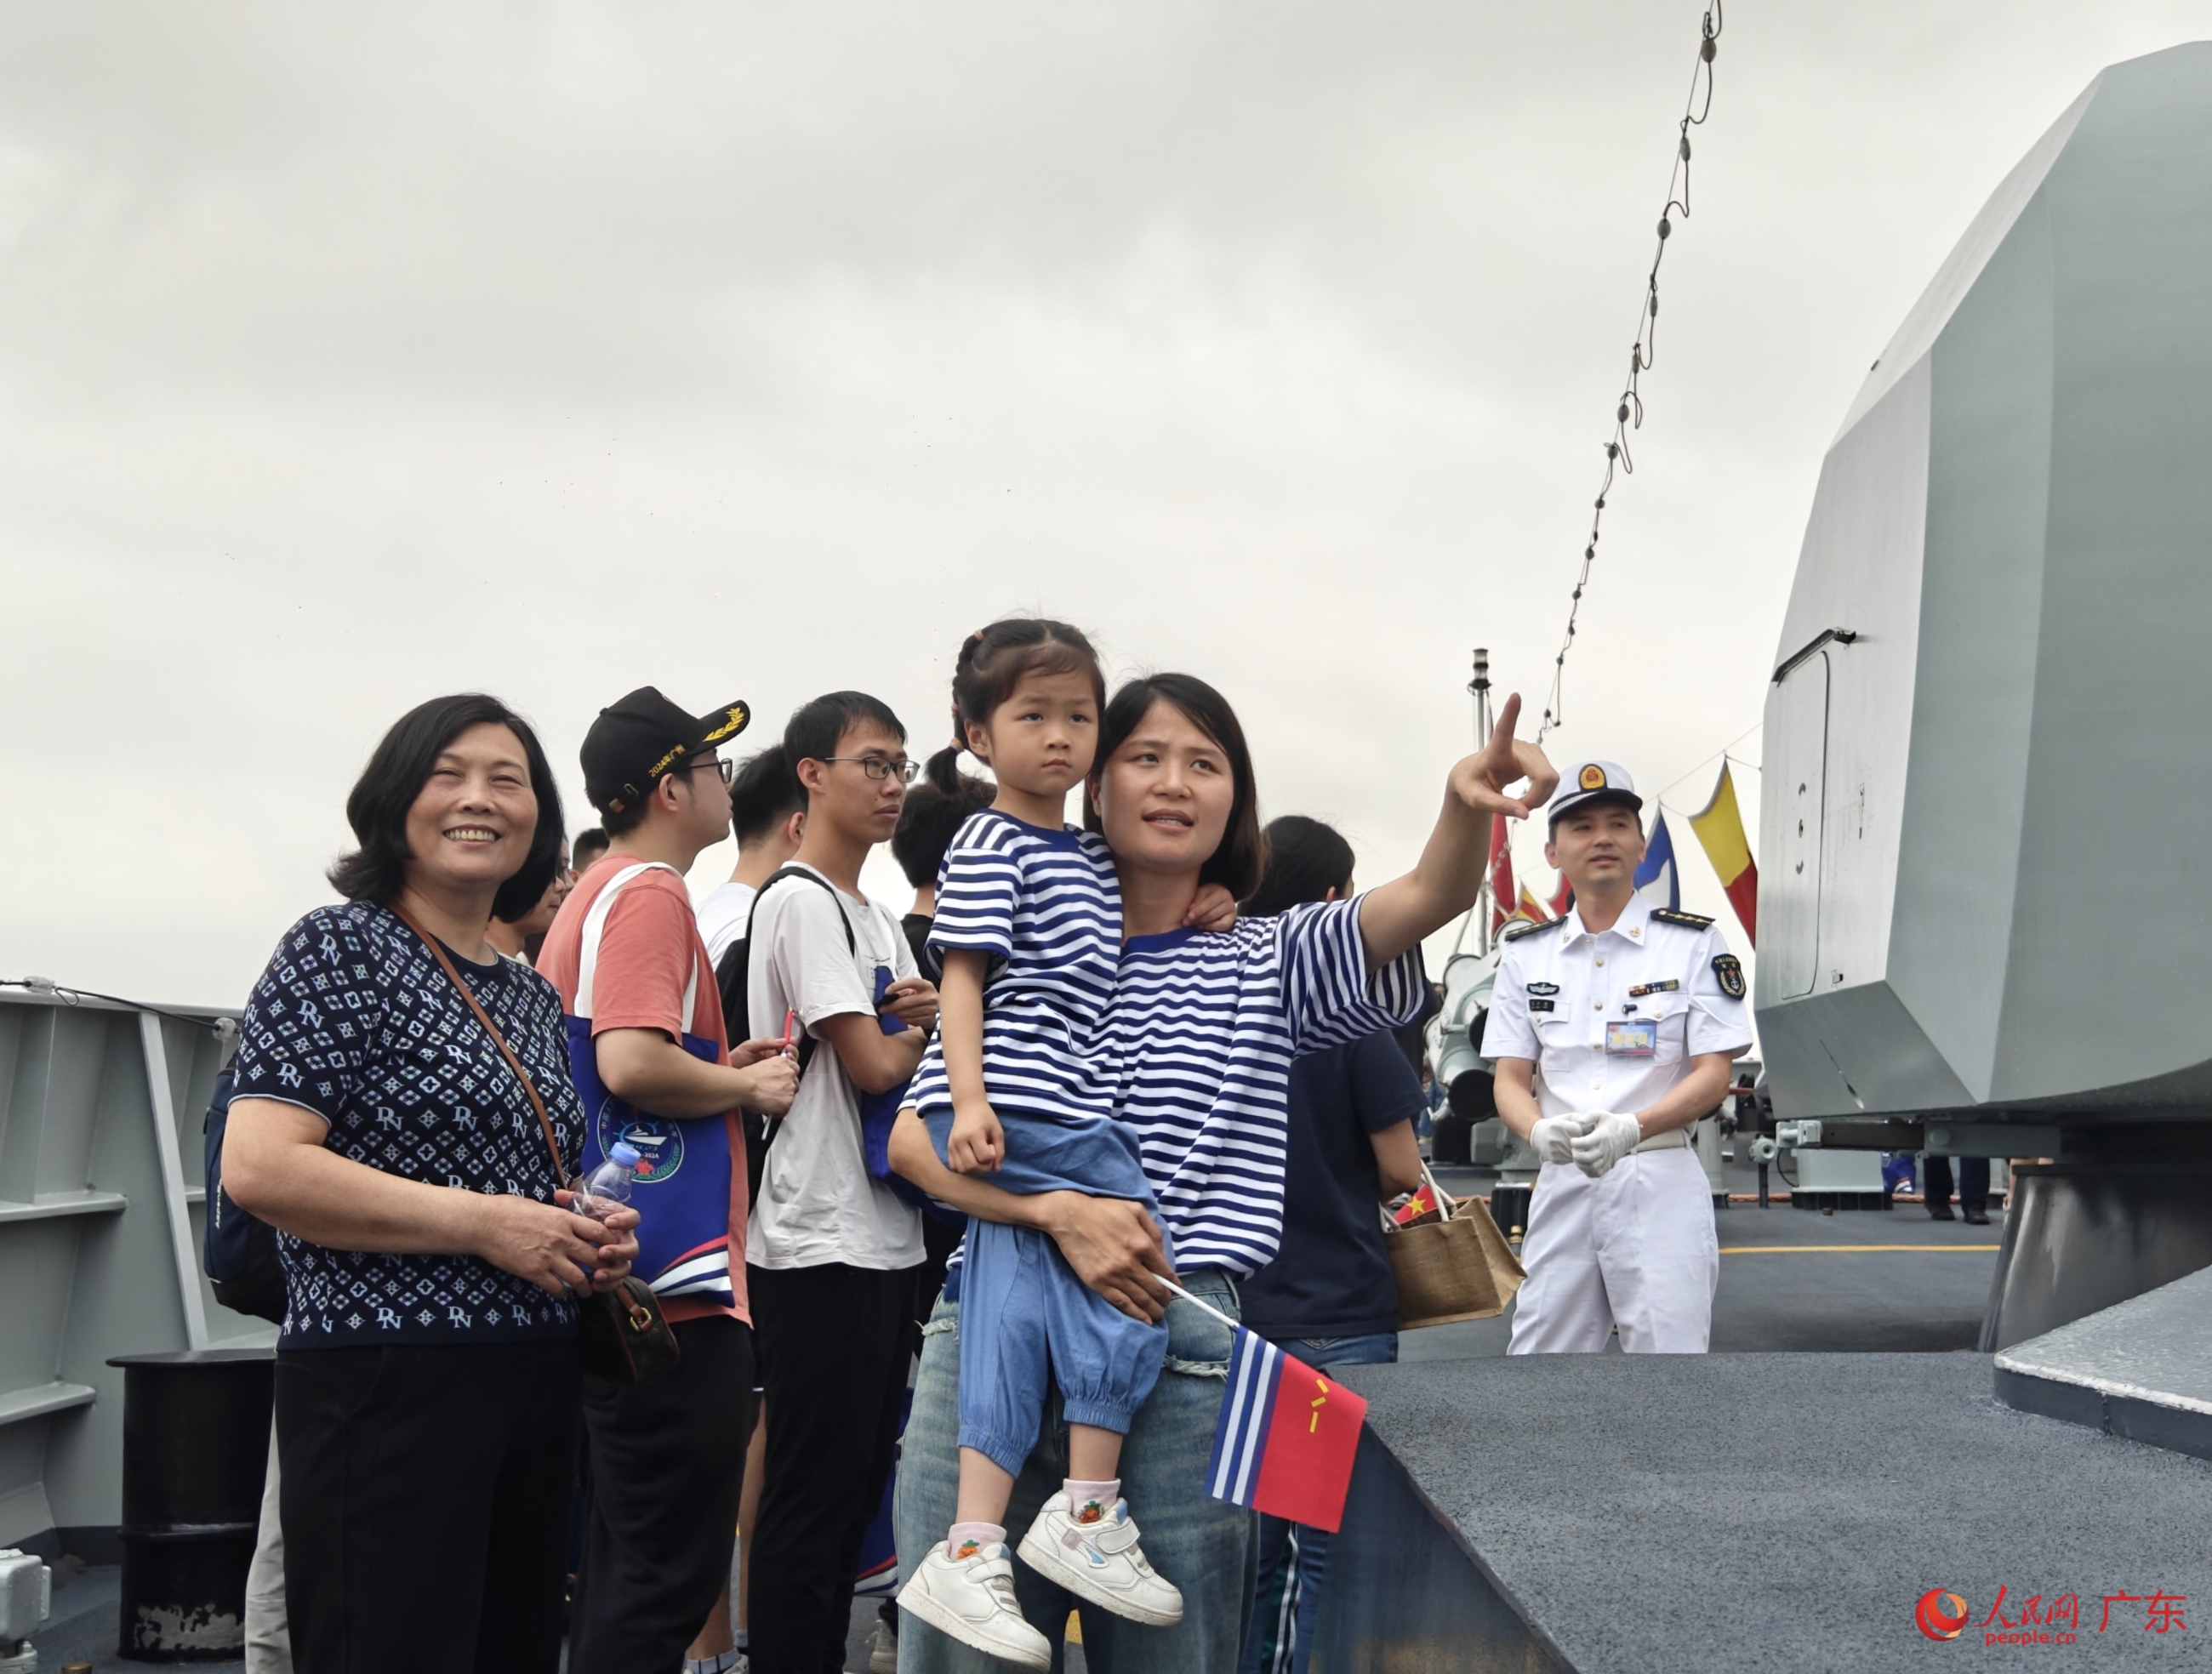 庆祝人民海军成立75周年 “广州舰回家乡”活动举行